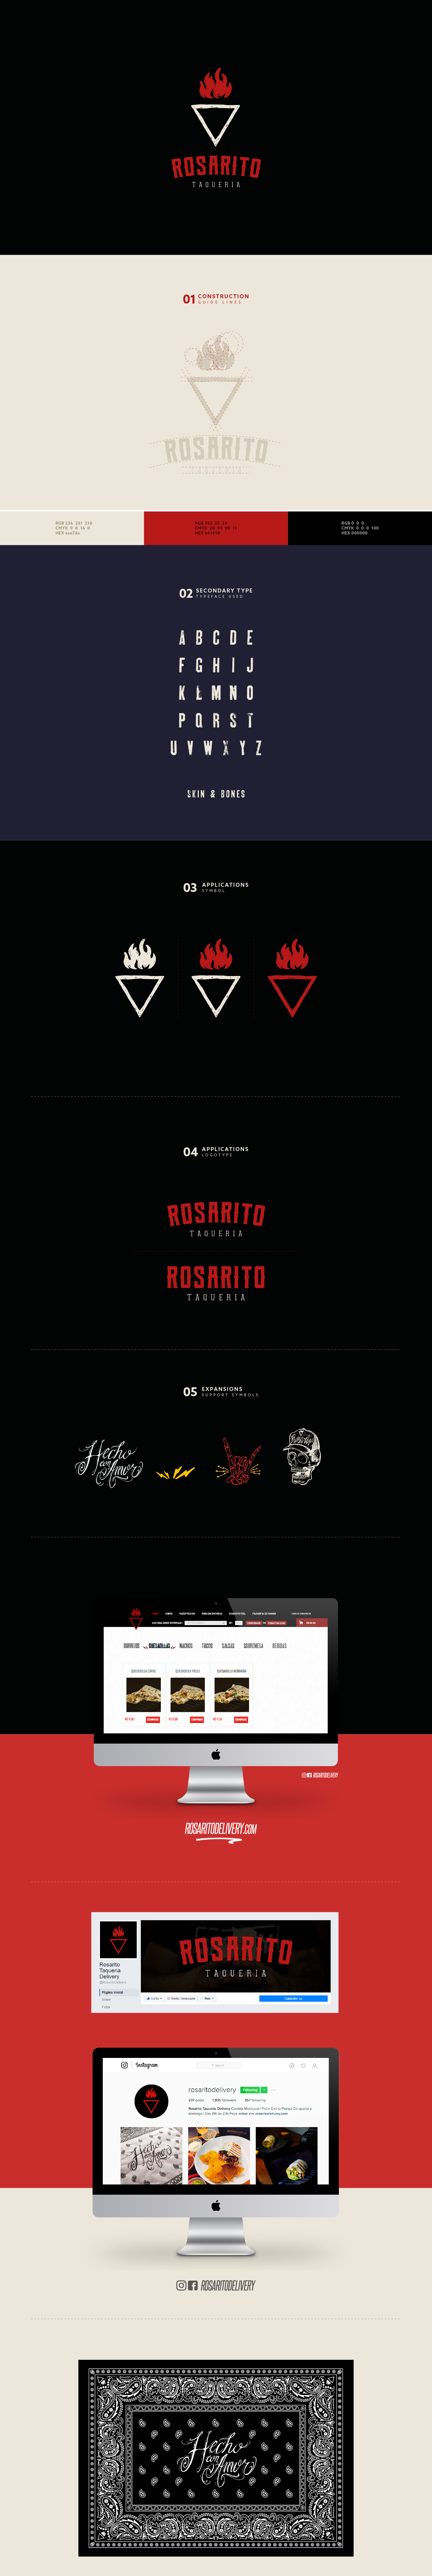 Mexican logo restaurant branding  rebranding ads